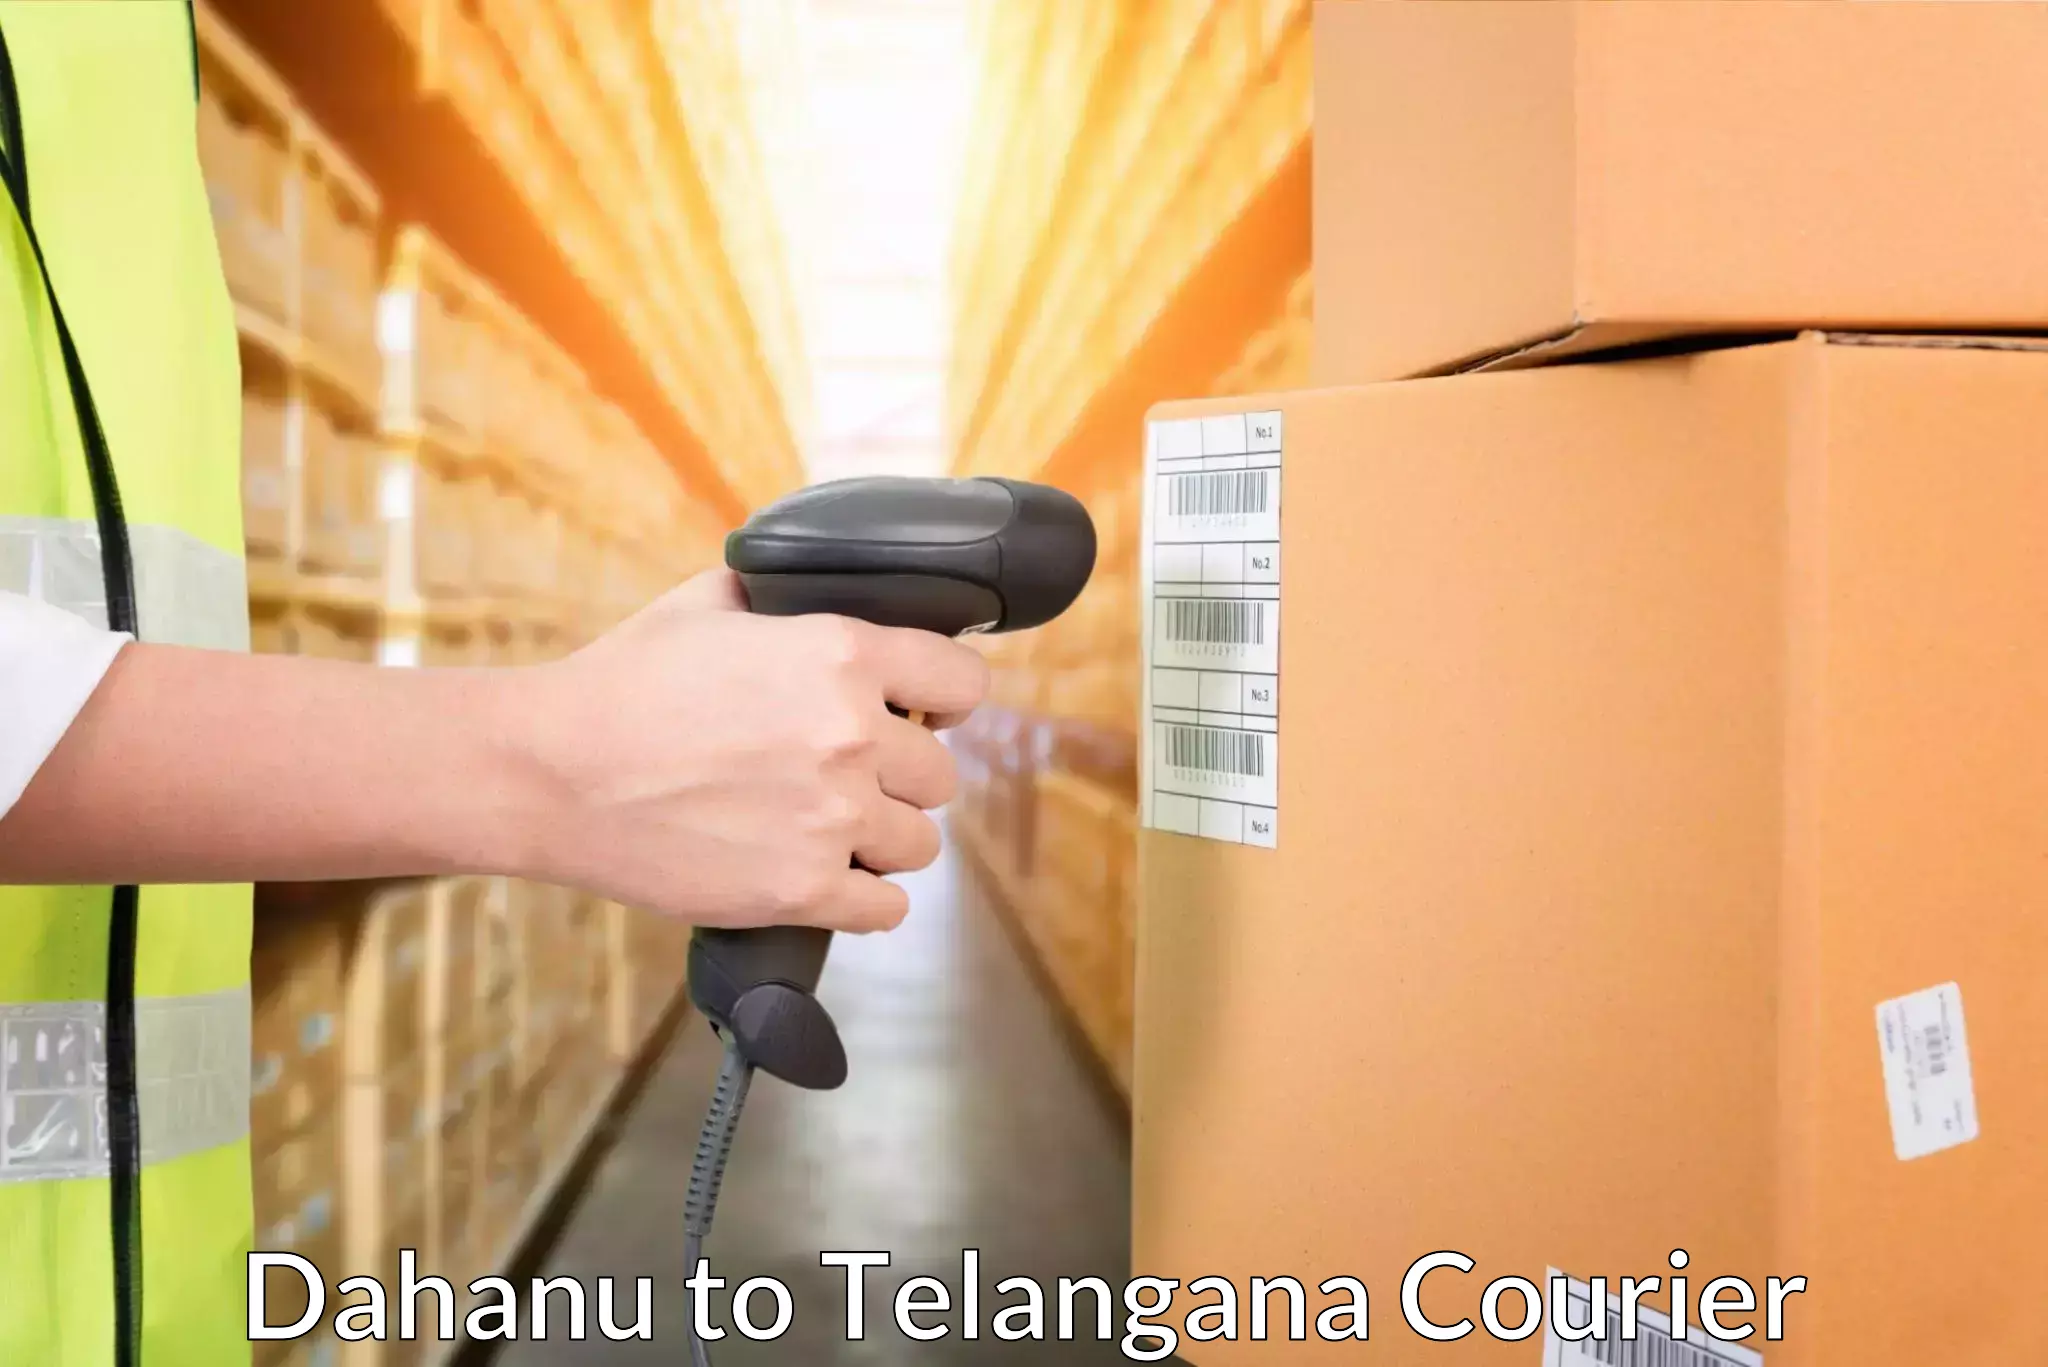 Express logistics providers Dahanu to Alair